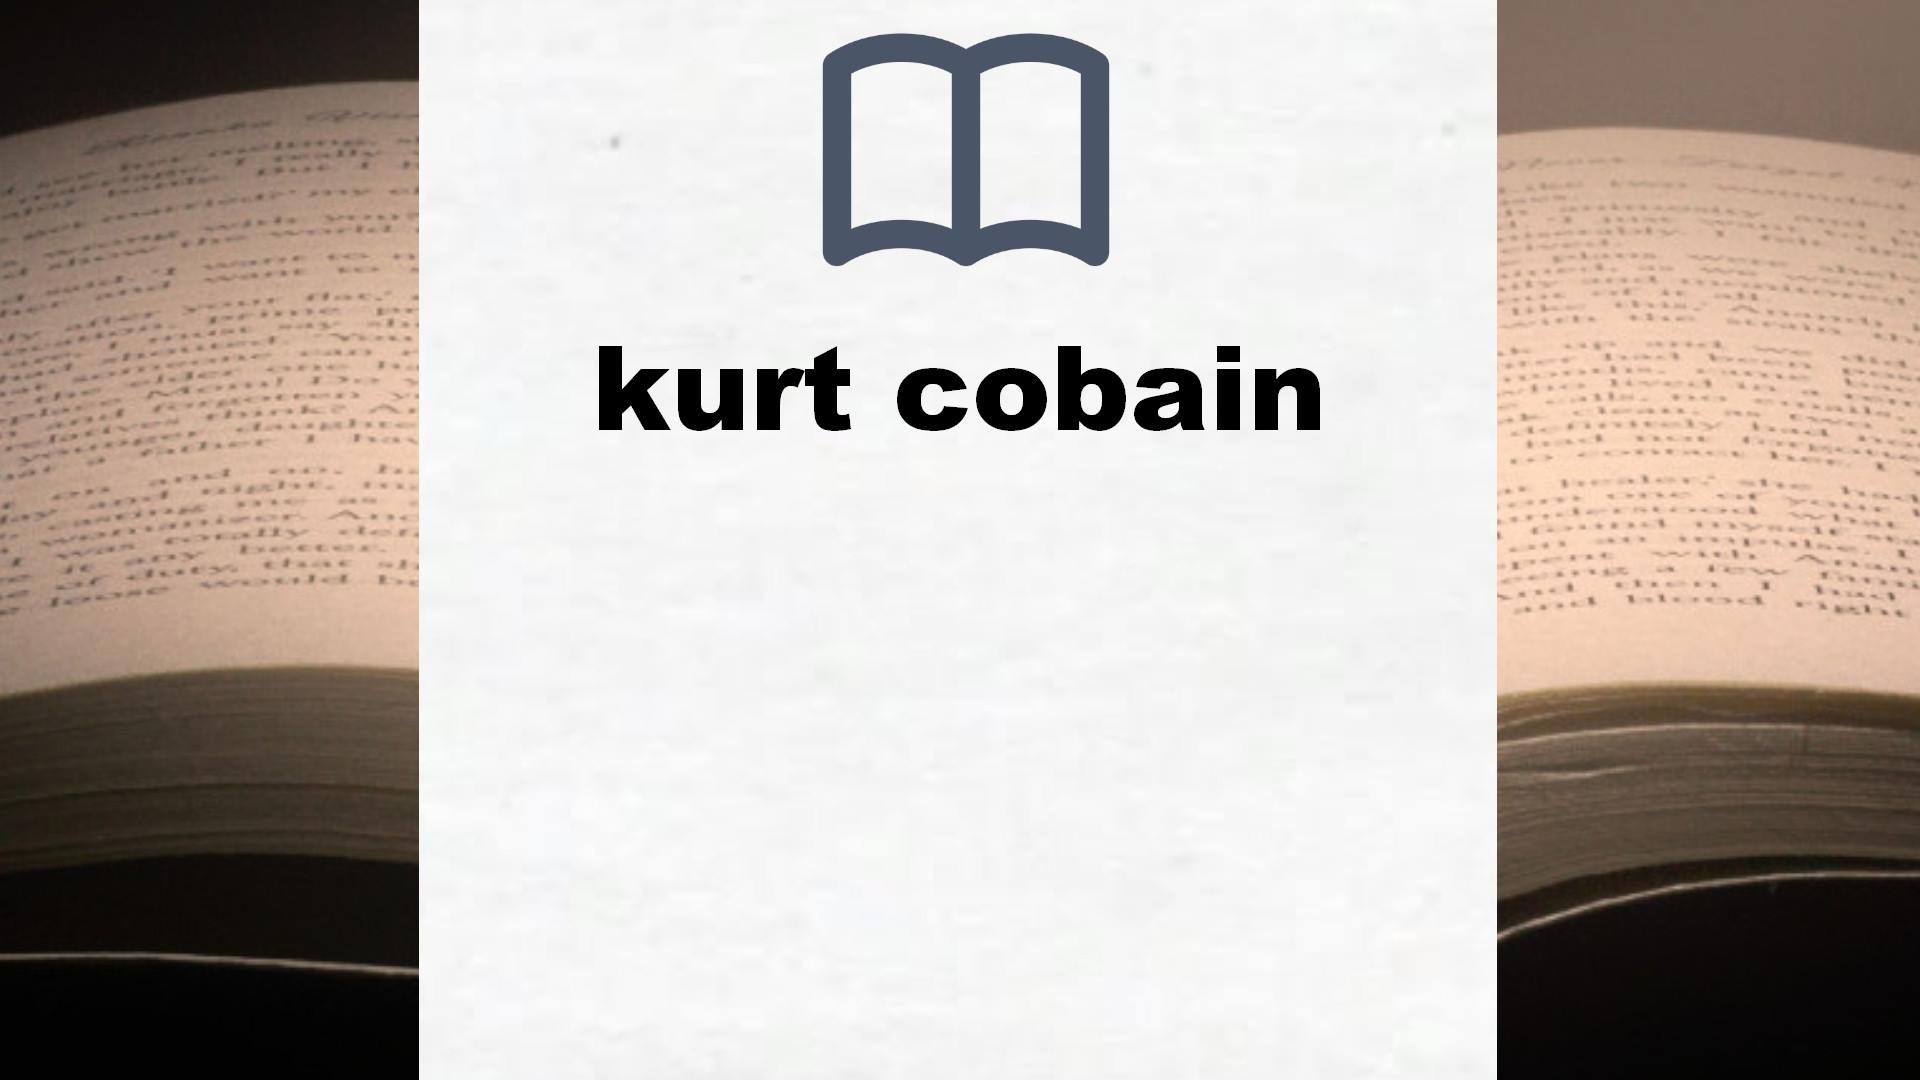 Libros sobre kurt cobain